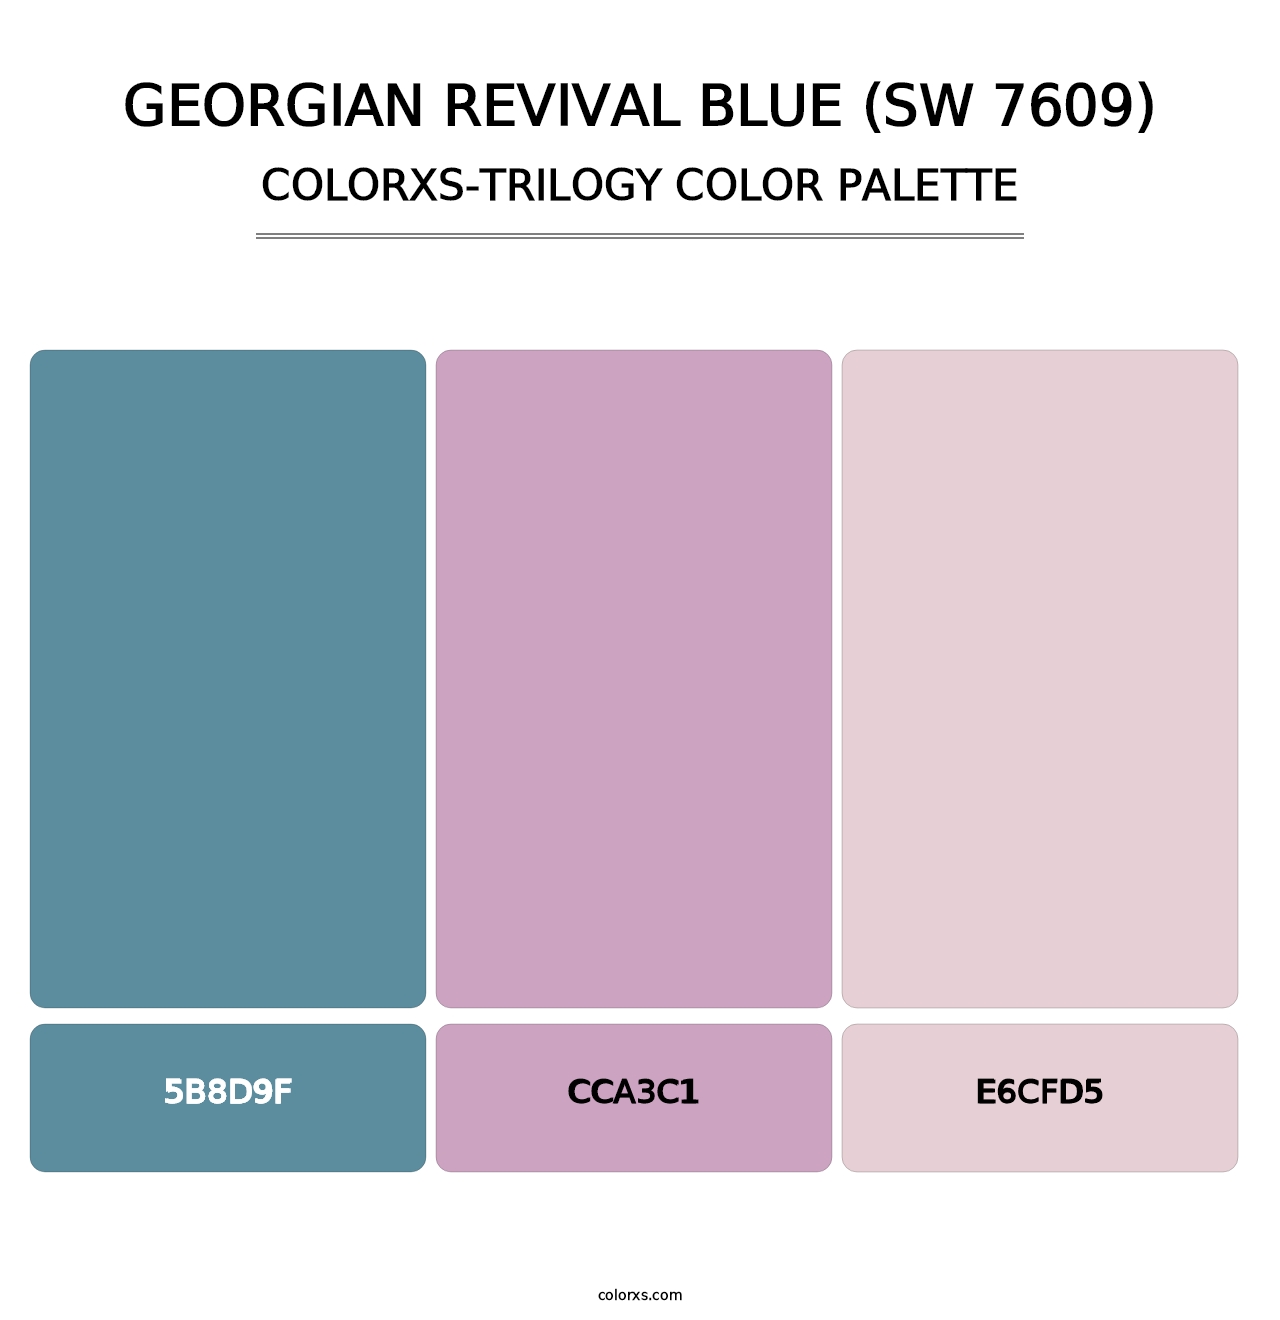 Georgian Revival Blue (SW 7609) - Colorxs Trilogy Palette